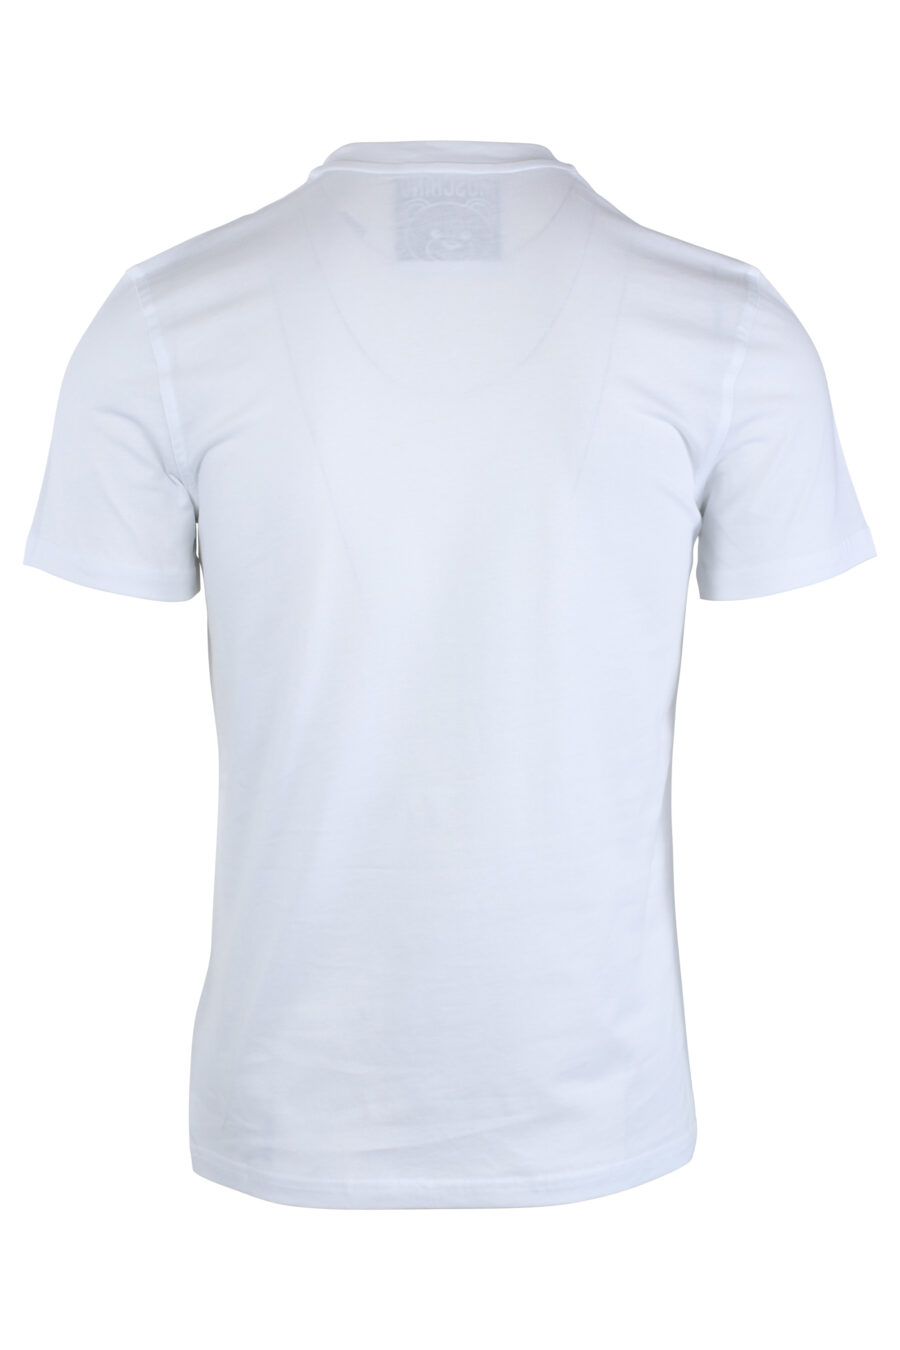 T-shirt branca com minilogo de urso monocromático - IMG 1650